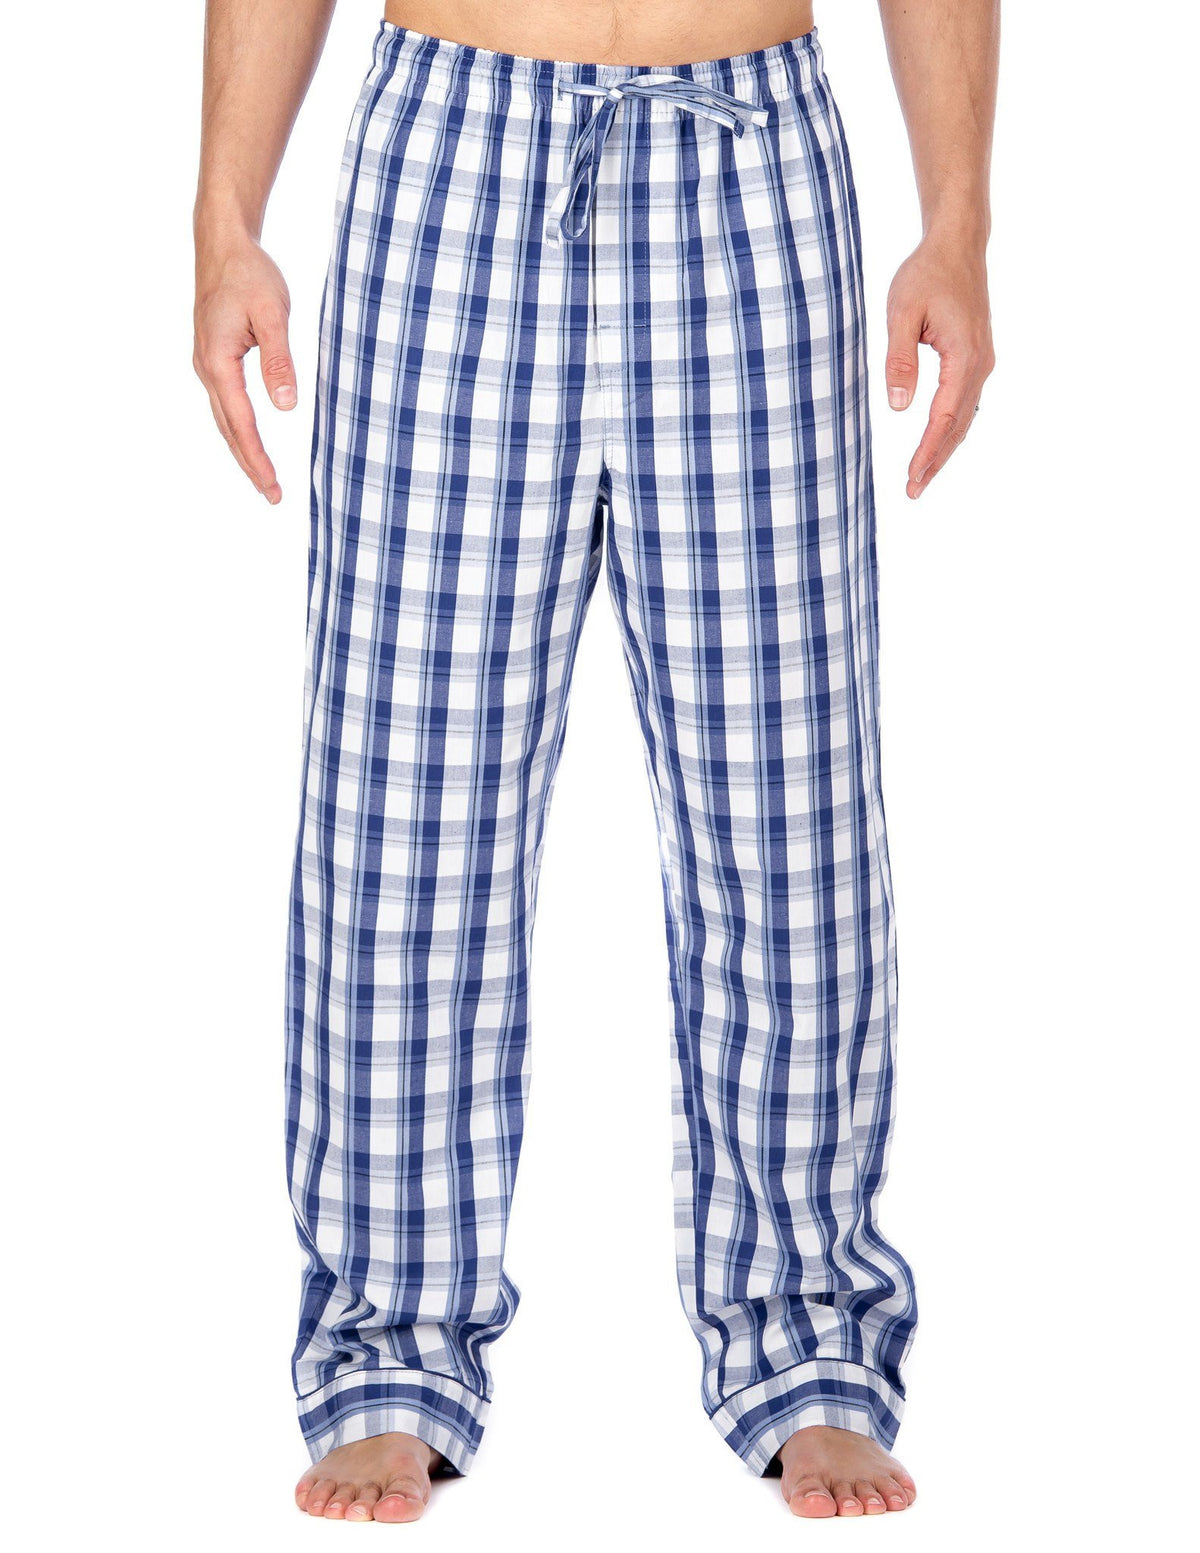 Men's 100% Cotton Comfort-Fit Sleep/Lounge Pants - Plaid Blue/White